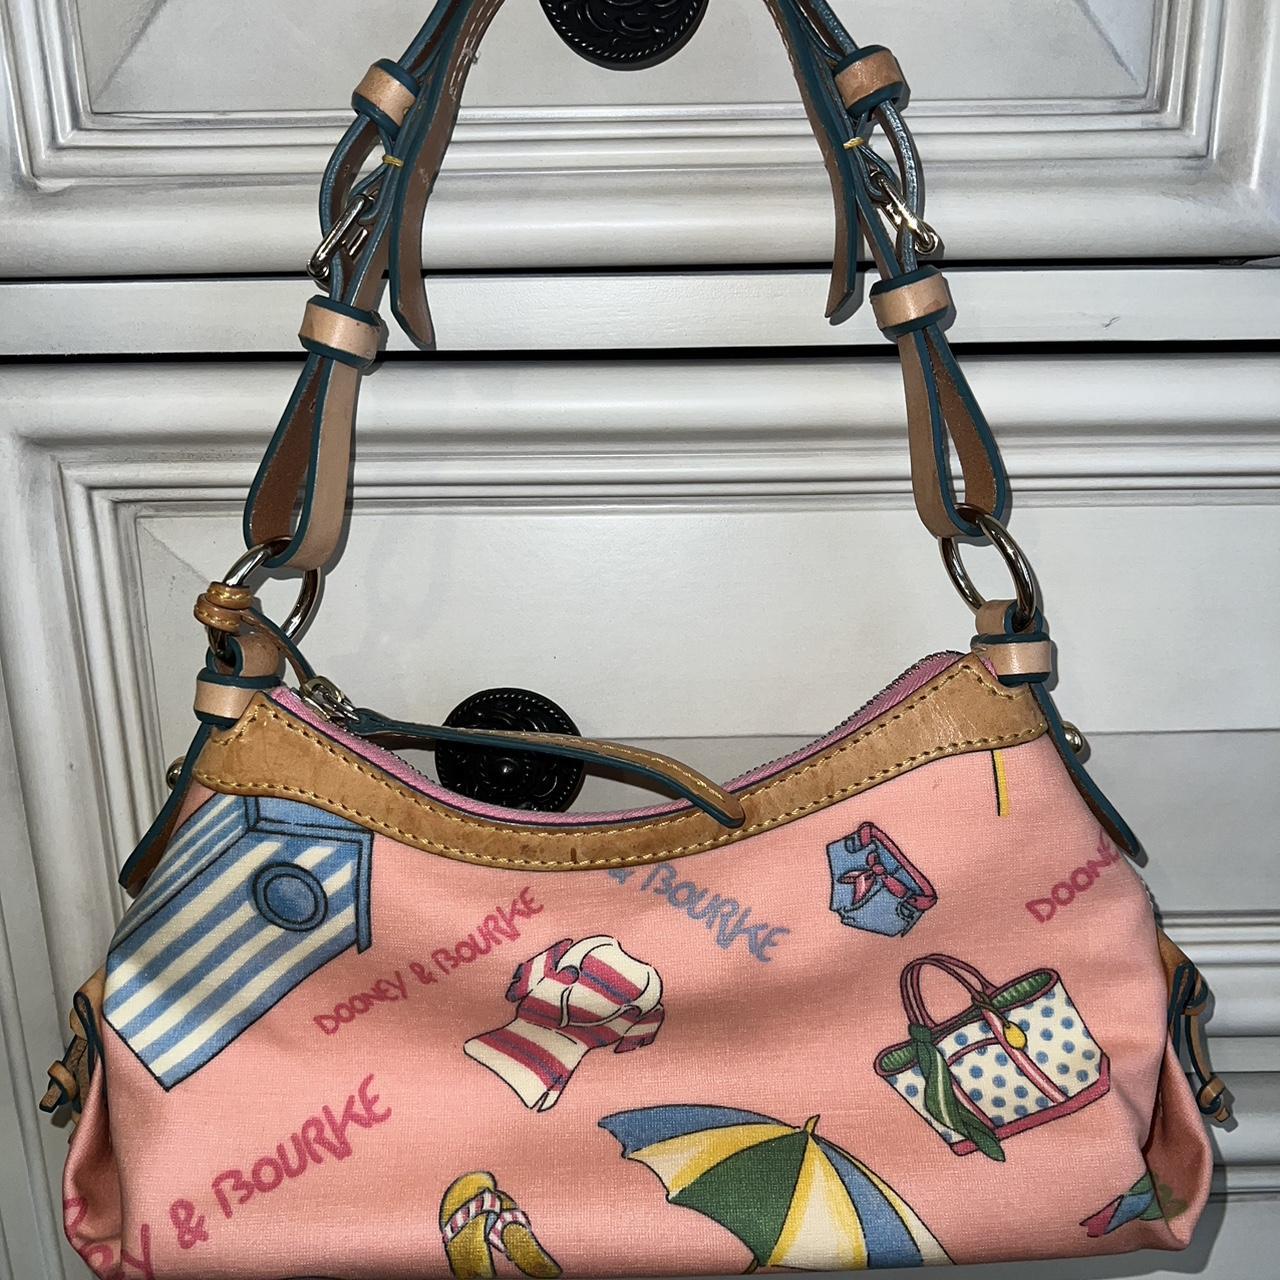 Dooney & Bourke Women's Pink Bag | Depop